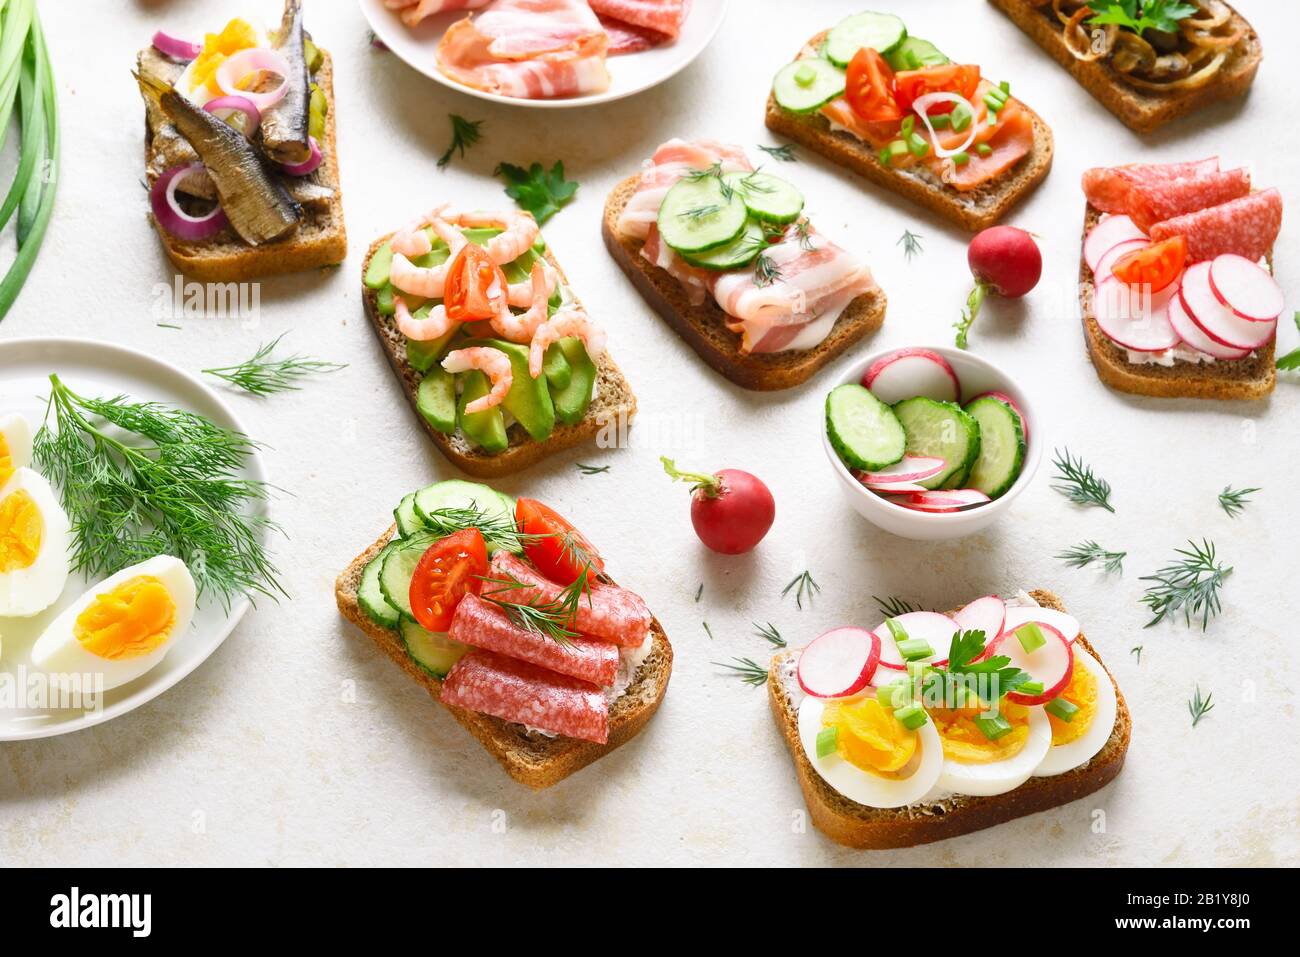 Assortiment de sandwichs ouverts sur fond de pierre légère. Différents sandwichs avec viande, légumes, fruits de mer. En-cas savoureux et sains. Banque D'Images